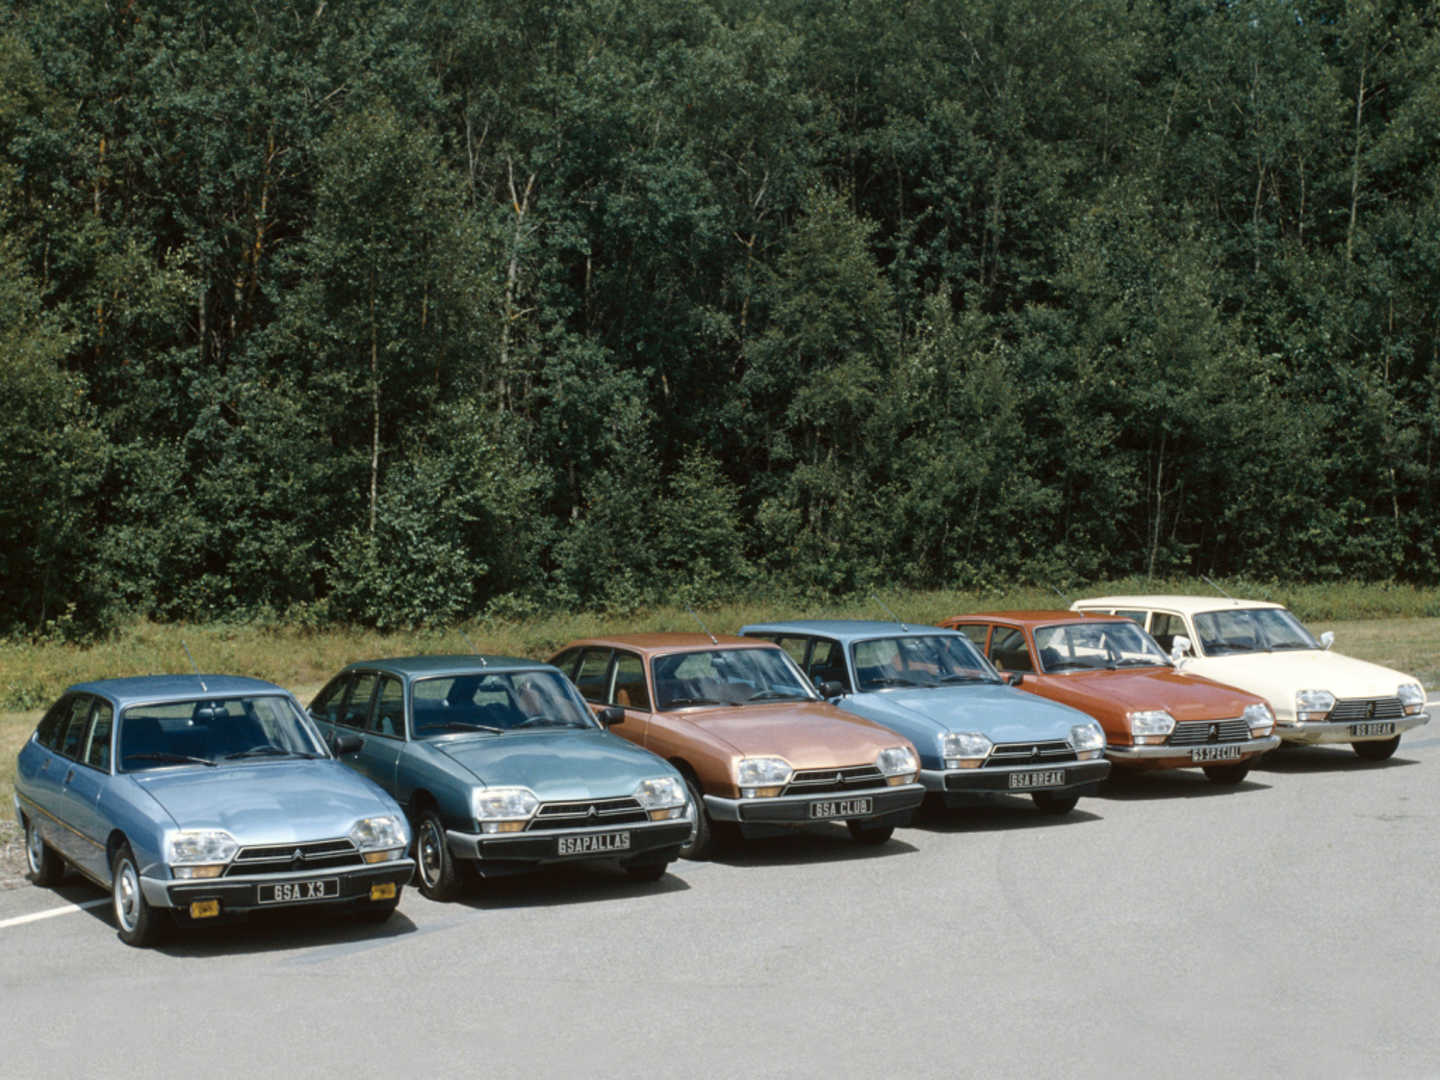 La gamme GS de Citroën